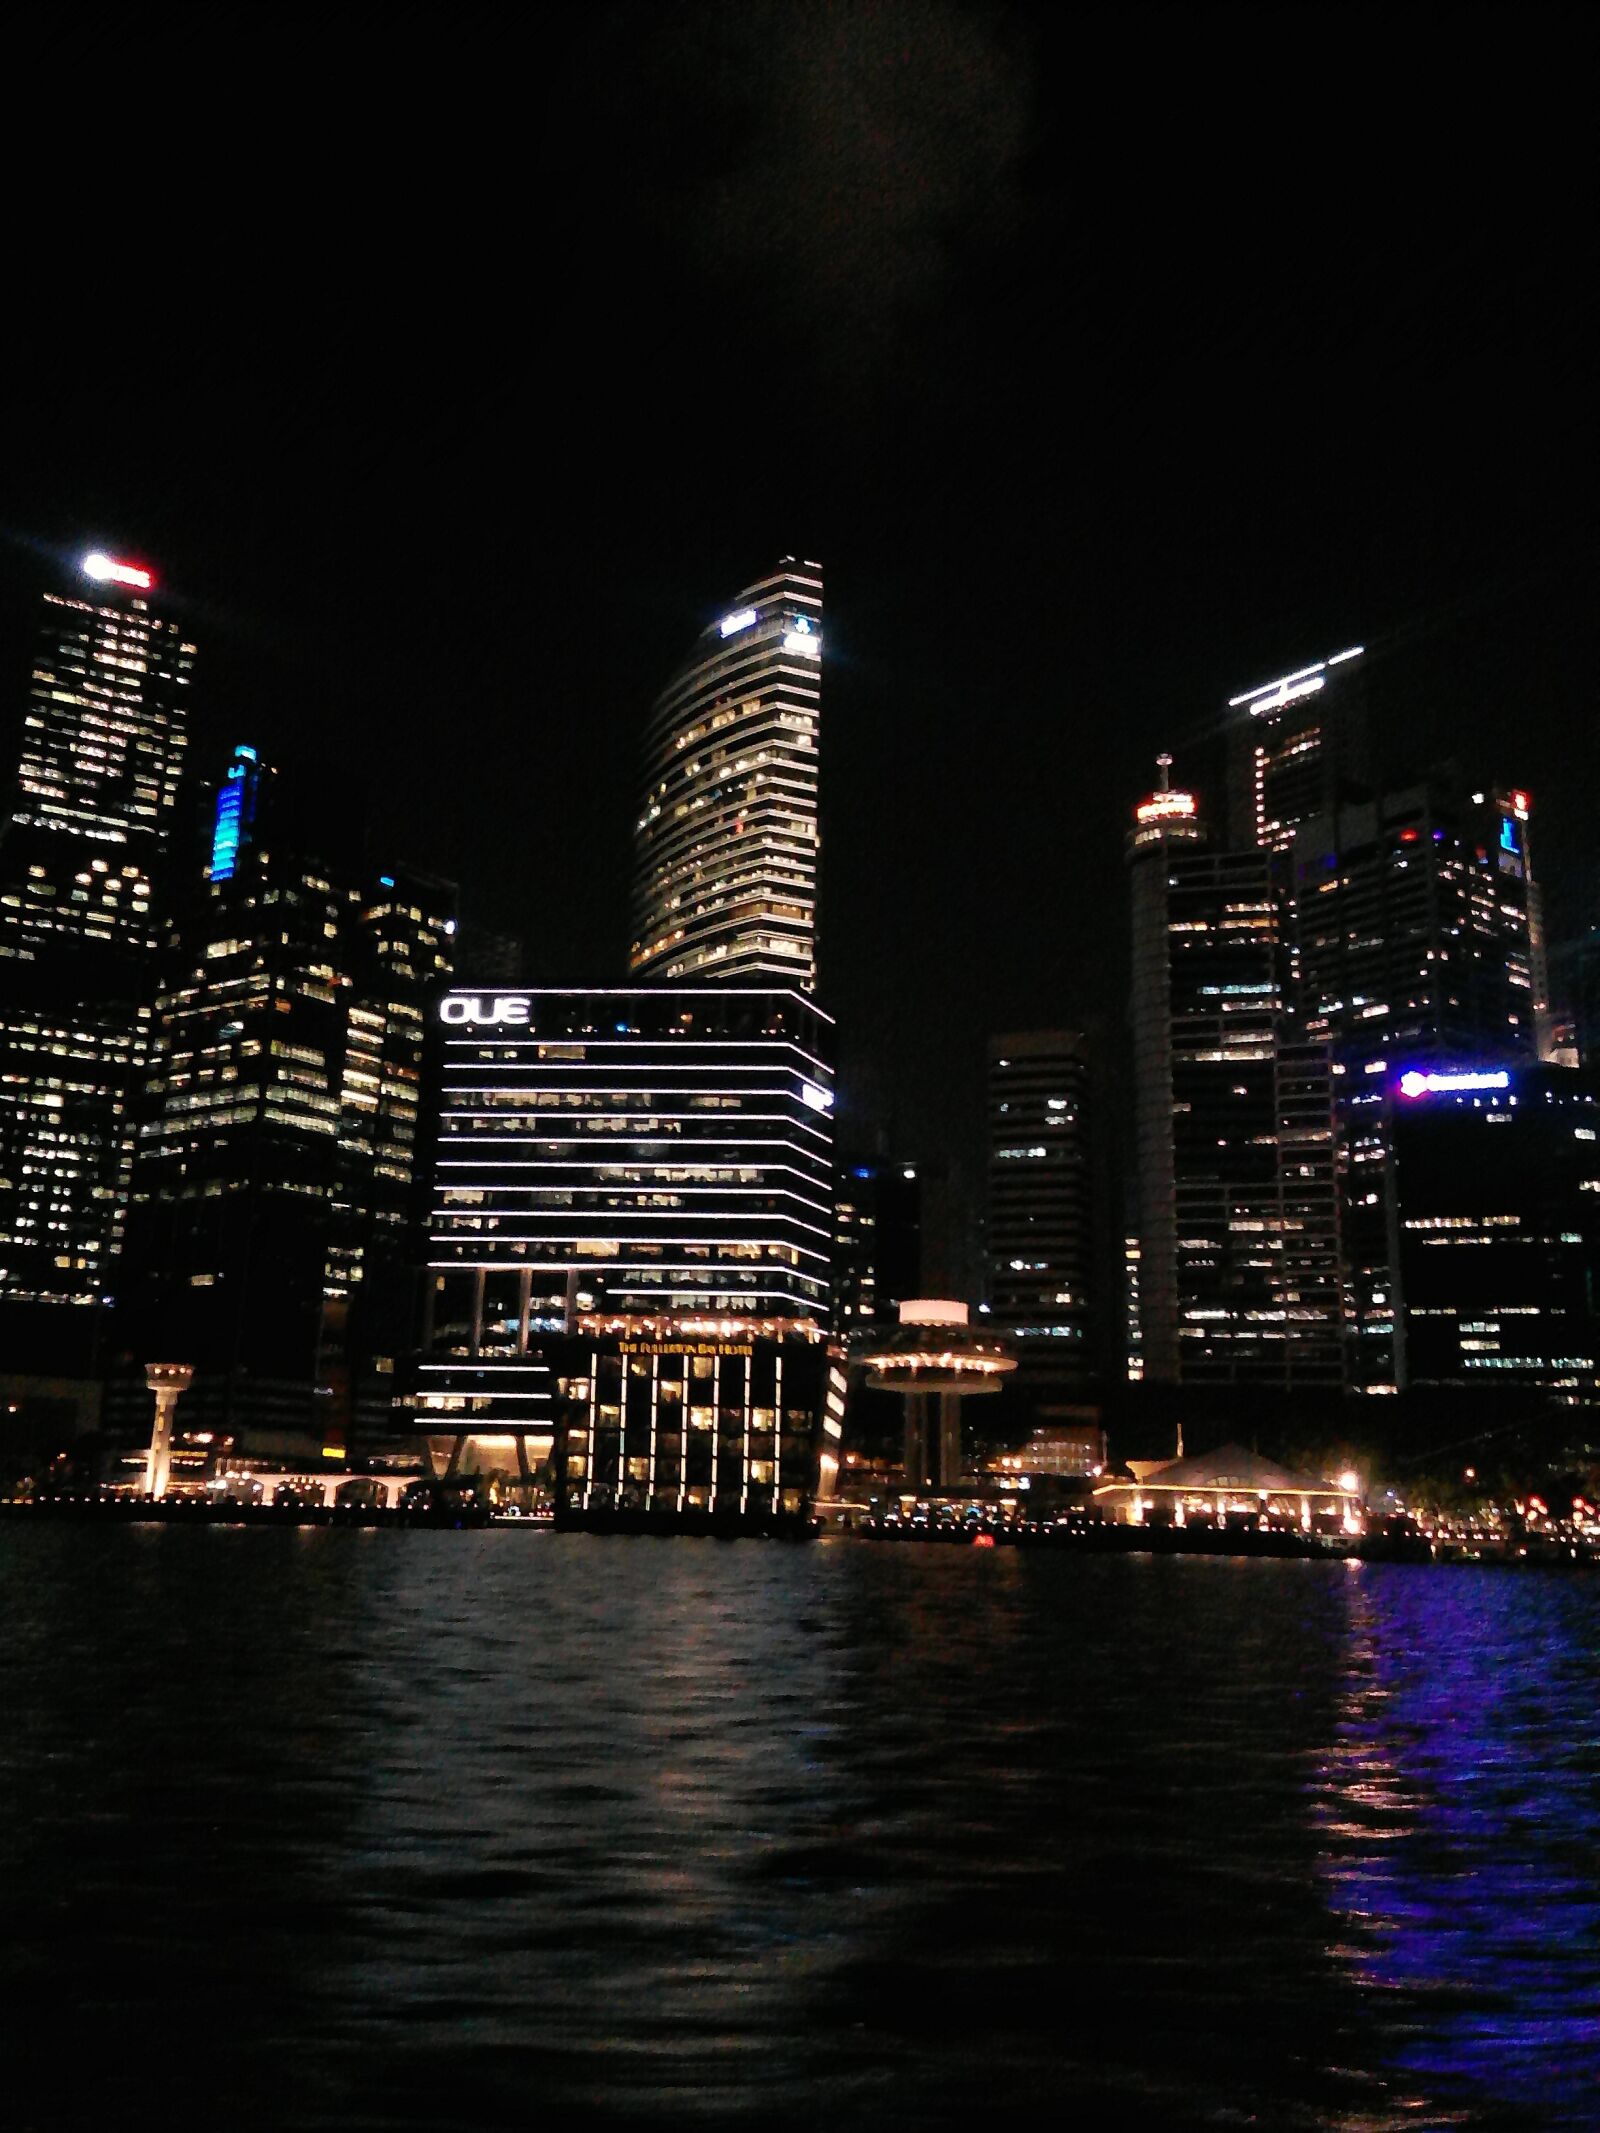 HTC DESIRE 326G DUAL SIM sample photo. Night singapore, river, night photography